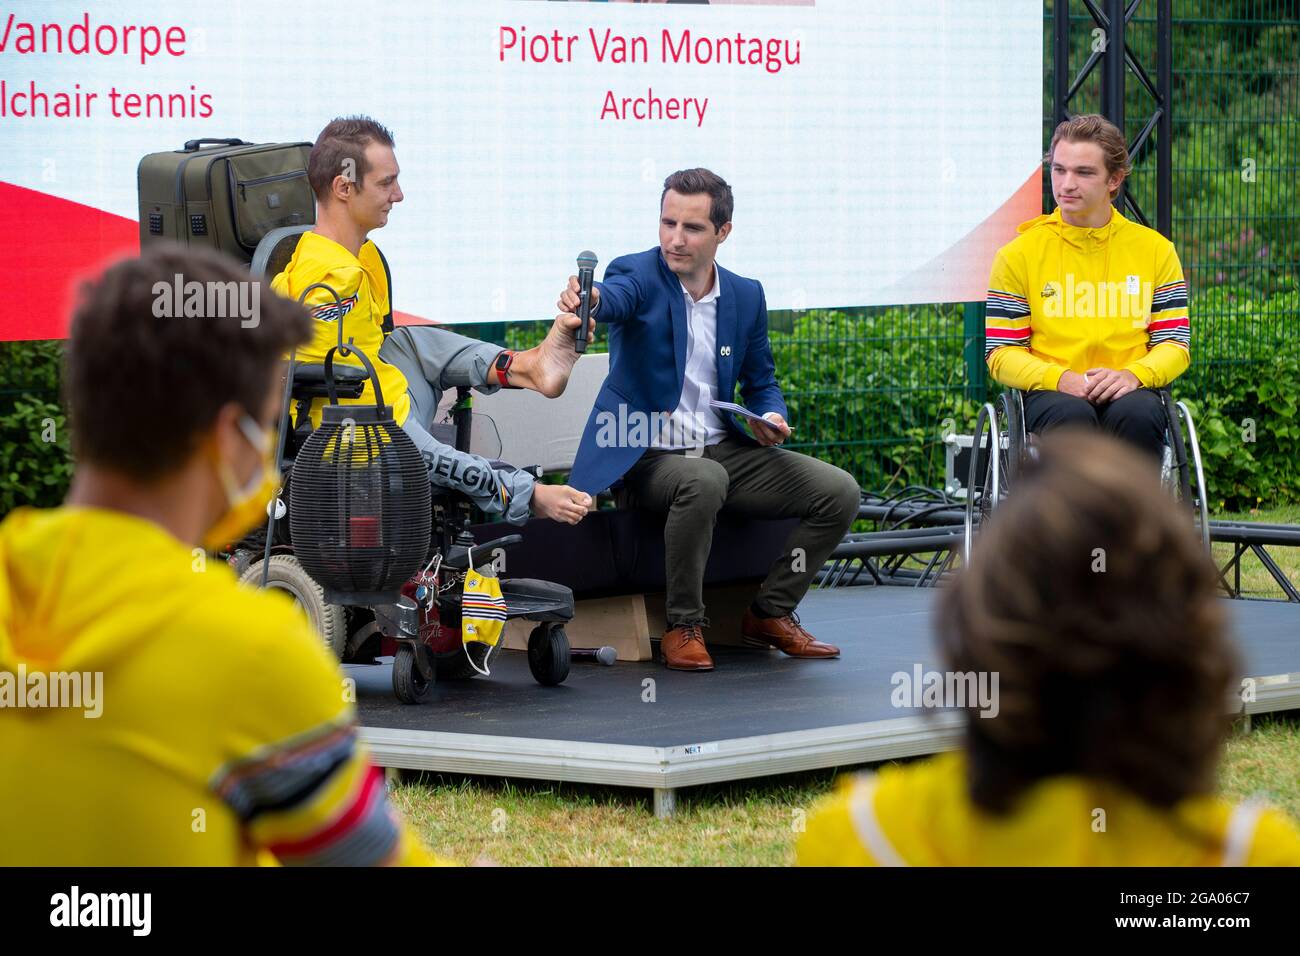 Piotr Van Montagu und der Paralympische Rollstuhltennisspieler Jef Vandorpe im Bild bei einer Pressekonferenz des Paralympischen Teams Belgien vor der t Stockfoto